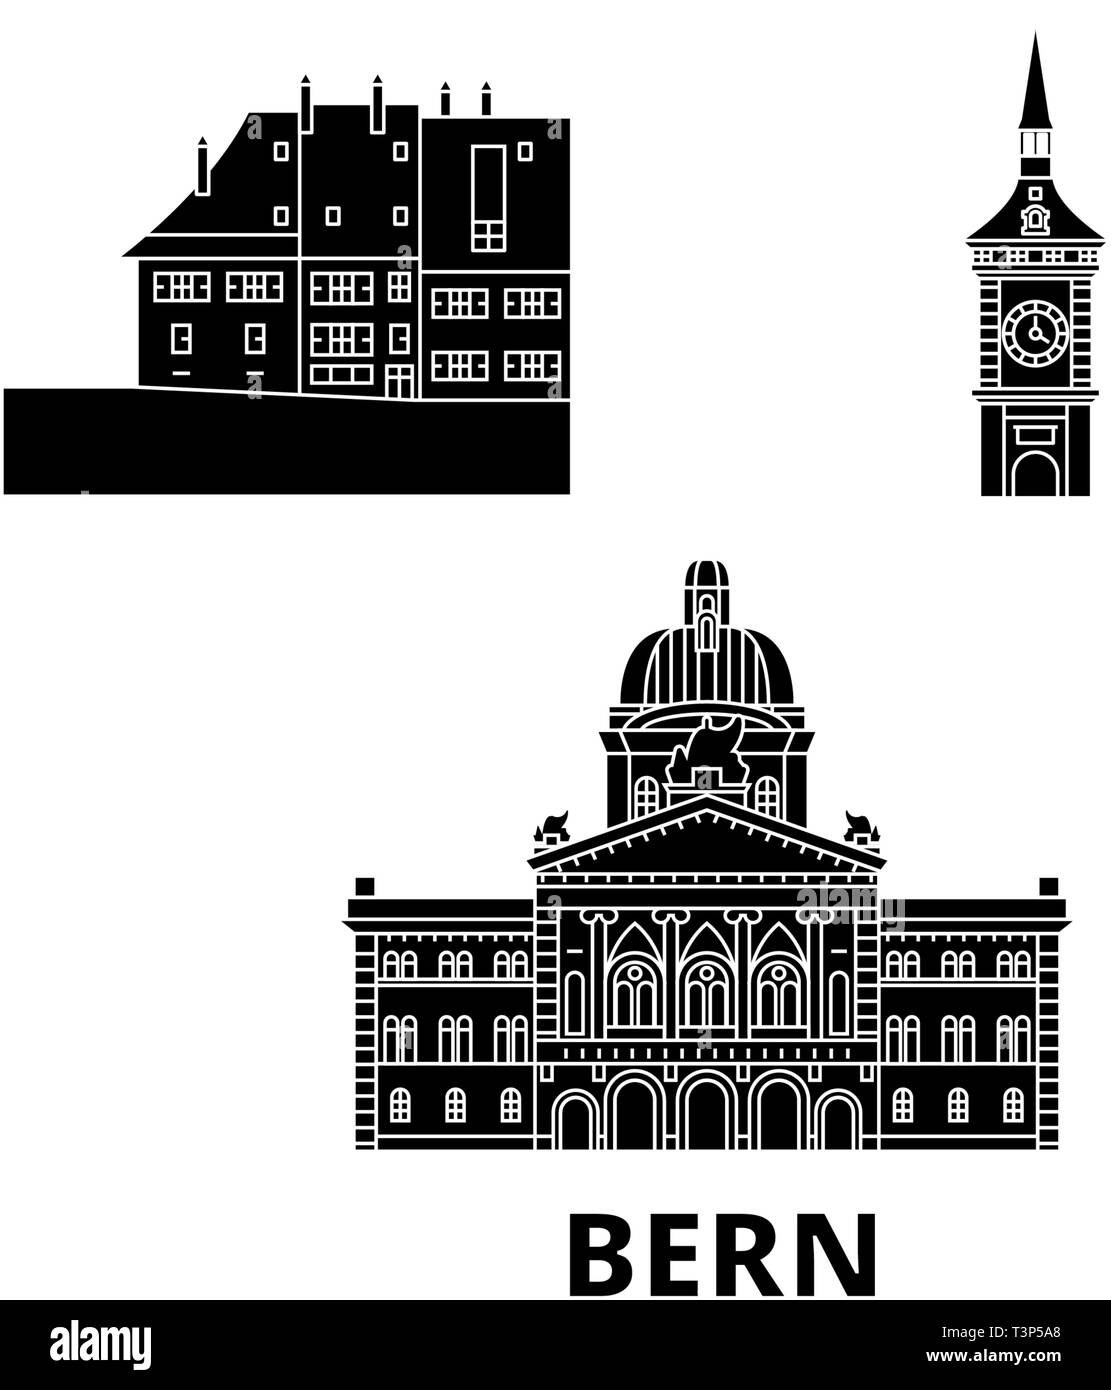 Schweiz, Bern Flachbild reisen Skyline. Schweiz, Bern schwarz Stadt Vektor-illustration, Symbol, Reisen, Sehenswürdigkeiten, Wahrzeichen. Stock Vektor